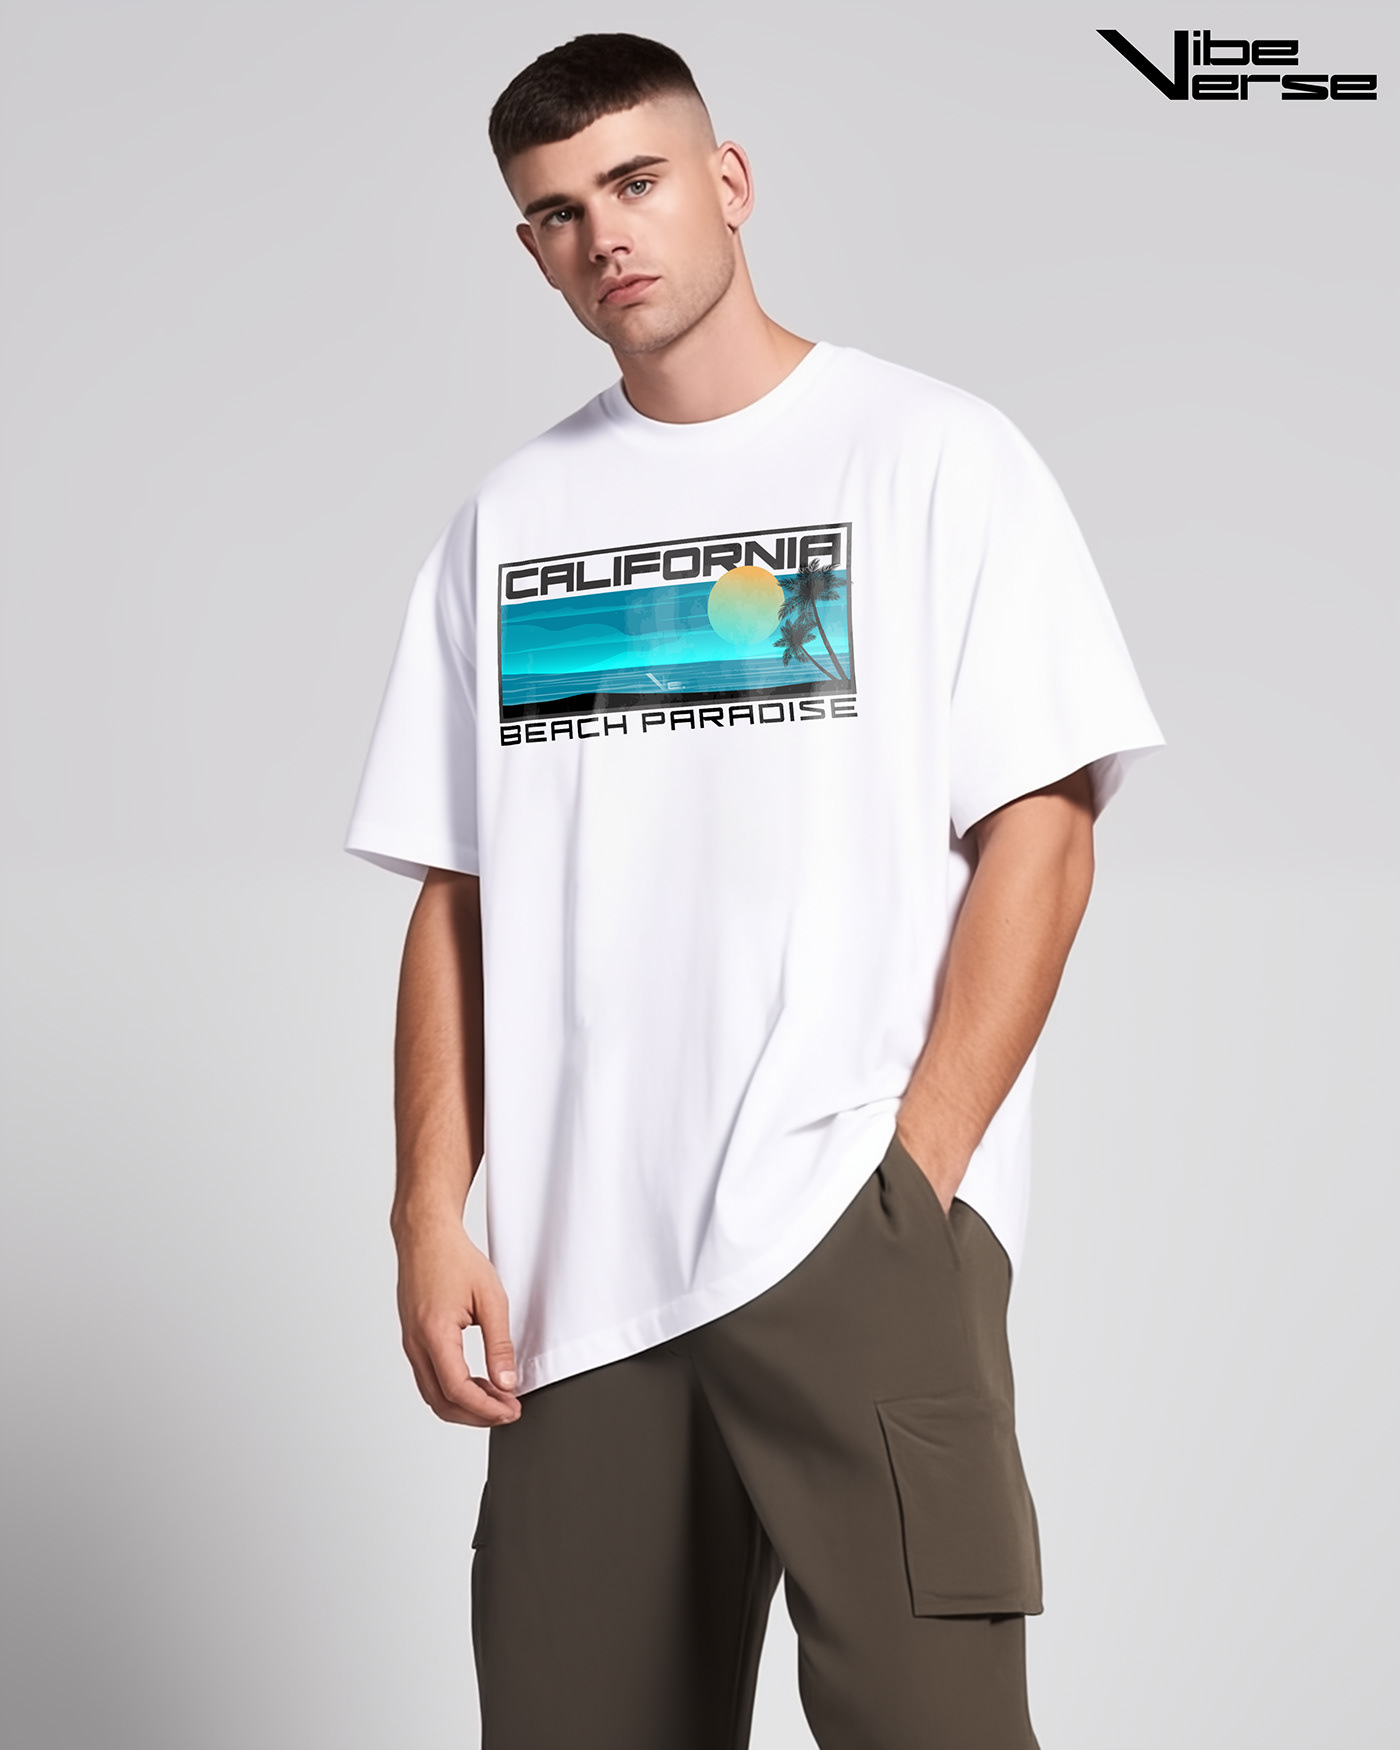 tees t-shirt Clothing Beach T-shirt tshirts T-Shirt Design T Shirt Tshirt Design apparel streetwear